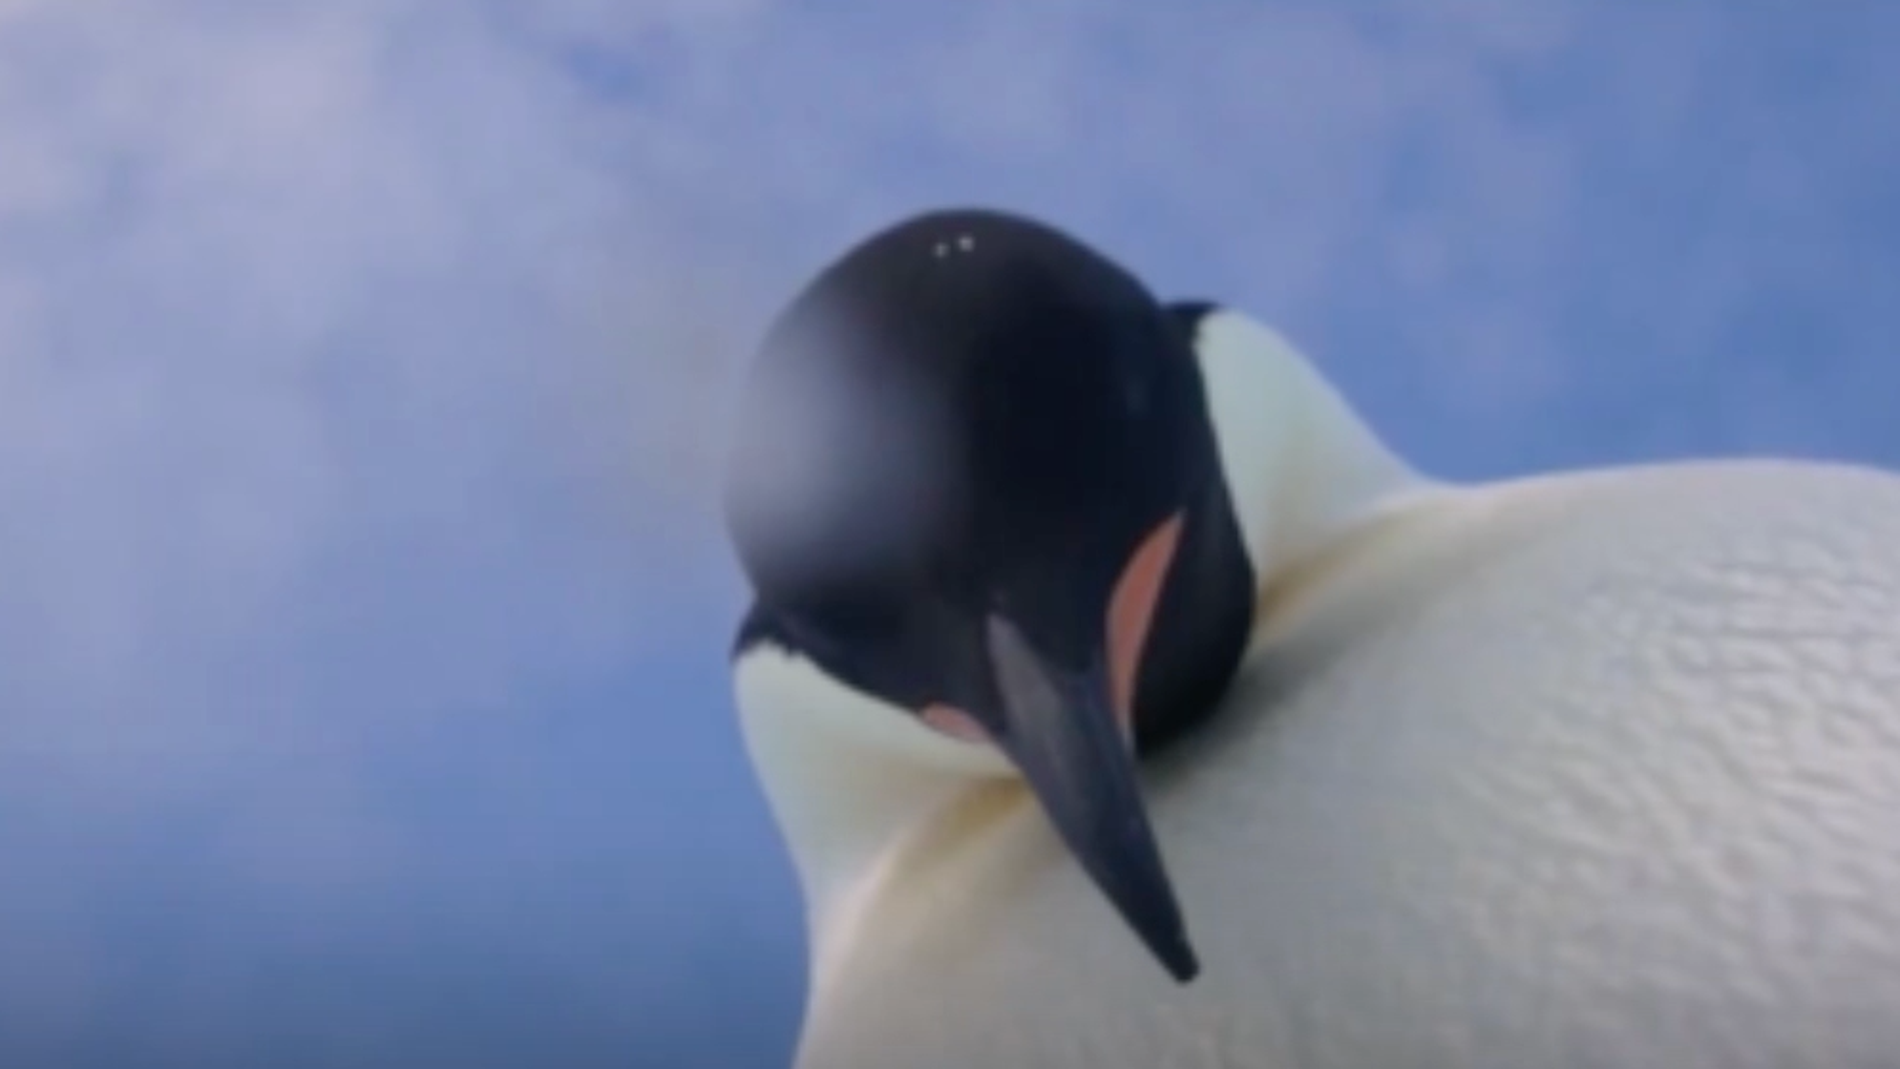 Uno de los dos pingüinos ajustando la cámara